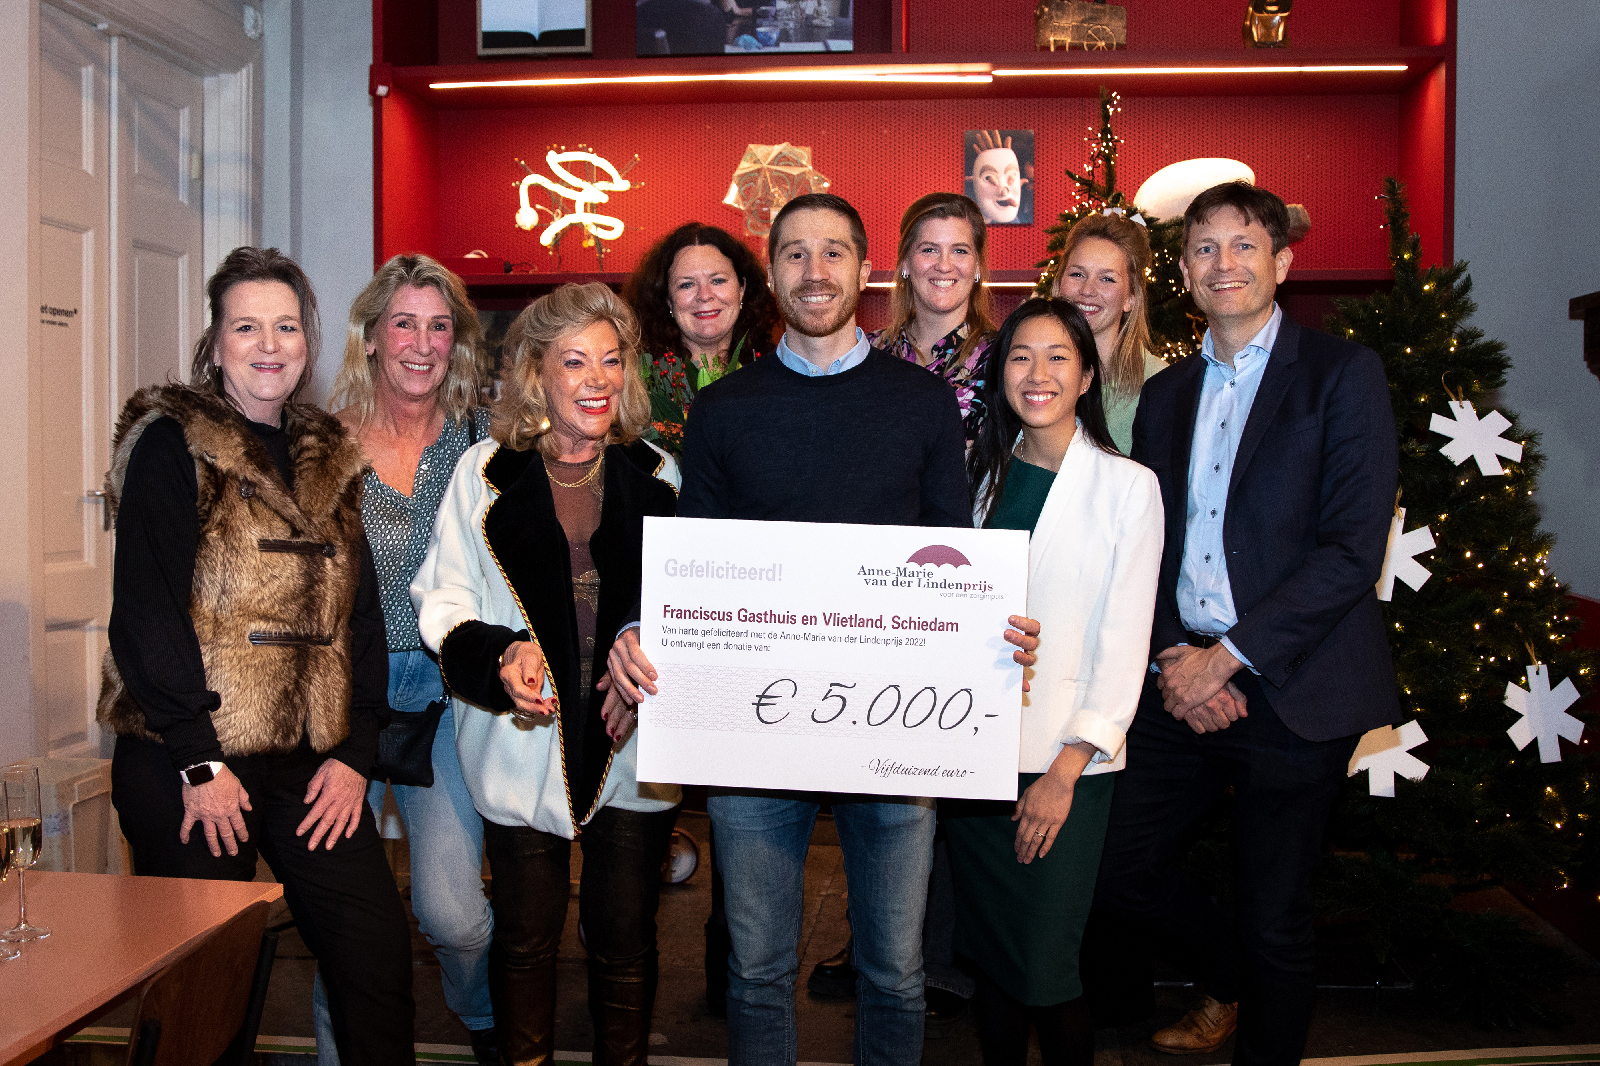 Het Franciscus Gasthuis en Vlietland ontving een donatie van € 5.000,-.